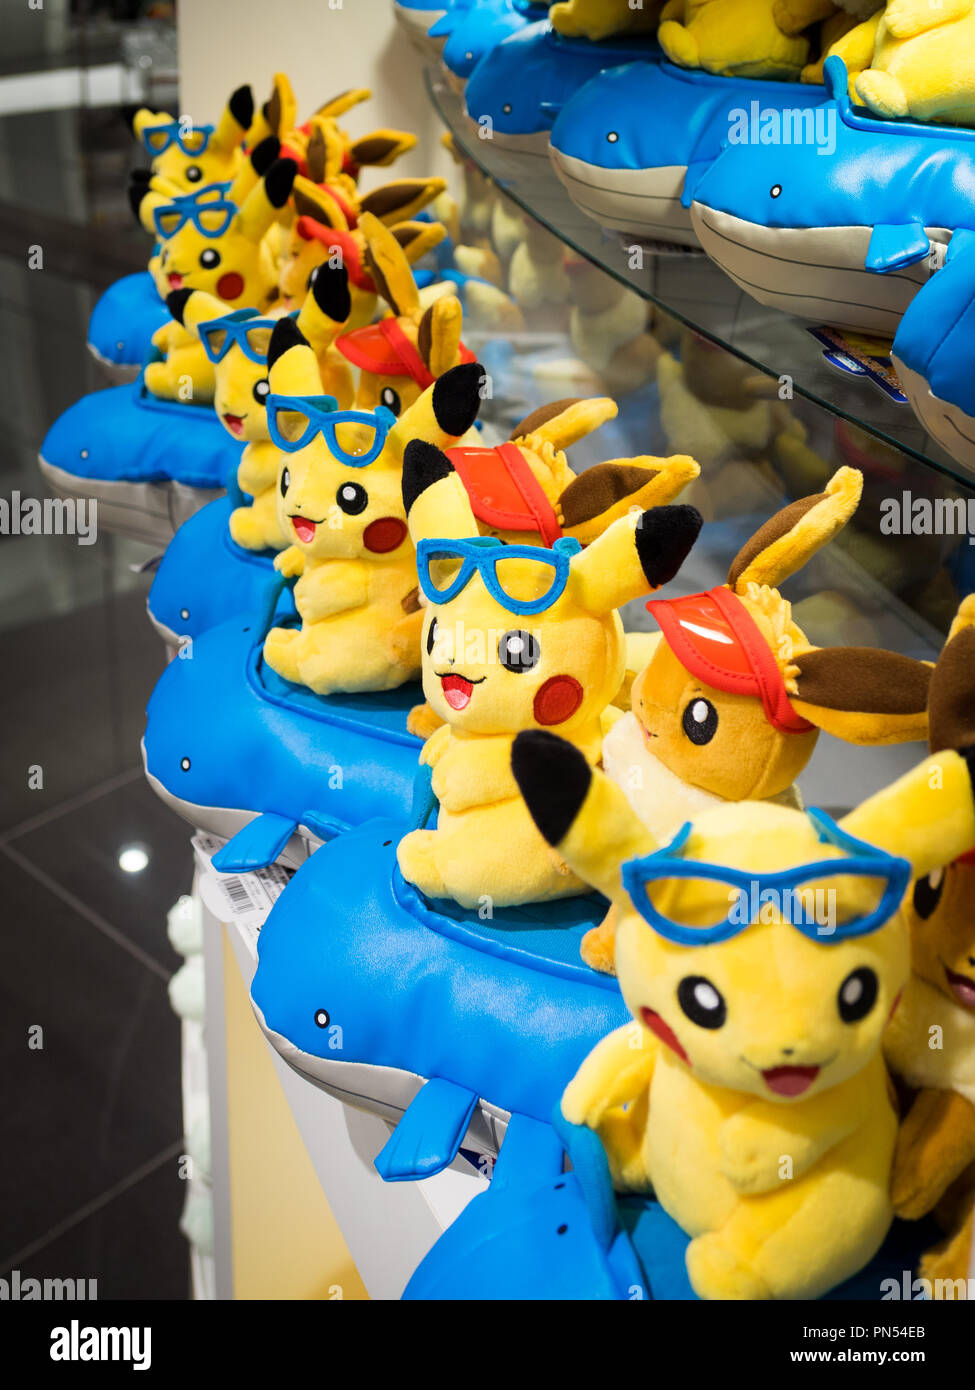 Rangées de Pikachu en peluche, Évoli et Wailmer Pokemon (Pokémon) au centre Pokemon Pokémon Center Tokyo DX (DX) à Tokyo Nihonbashi, Tokyo, Japon. Banque D'Images